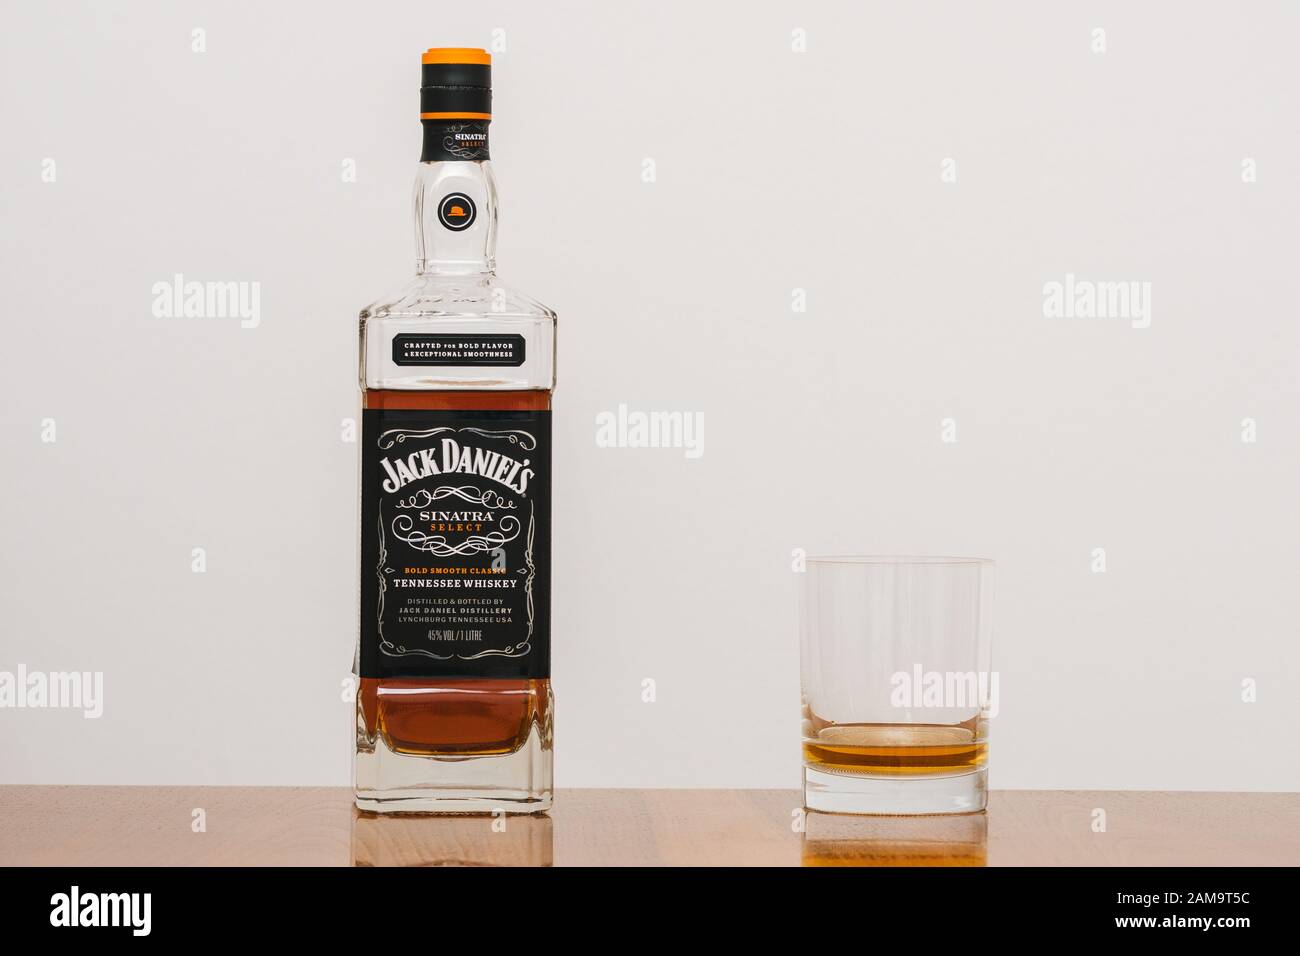 Lynchburg, Tennessee, USA - 11. Januar 2020: Jack Daniels Sinatra Select Tennessee Whiskey in einer Flasche und ein Tumbler Glas auf einem eleganten Wood Table. A Stockfoto